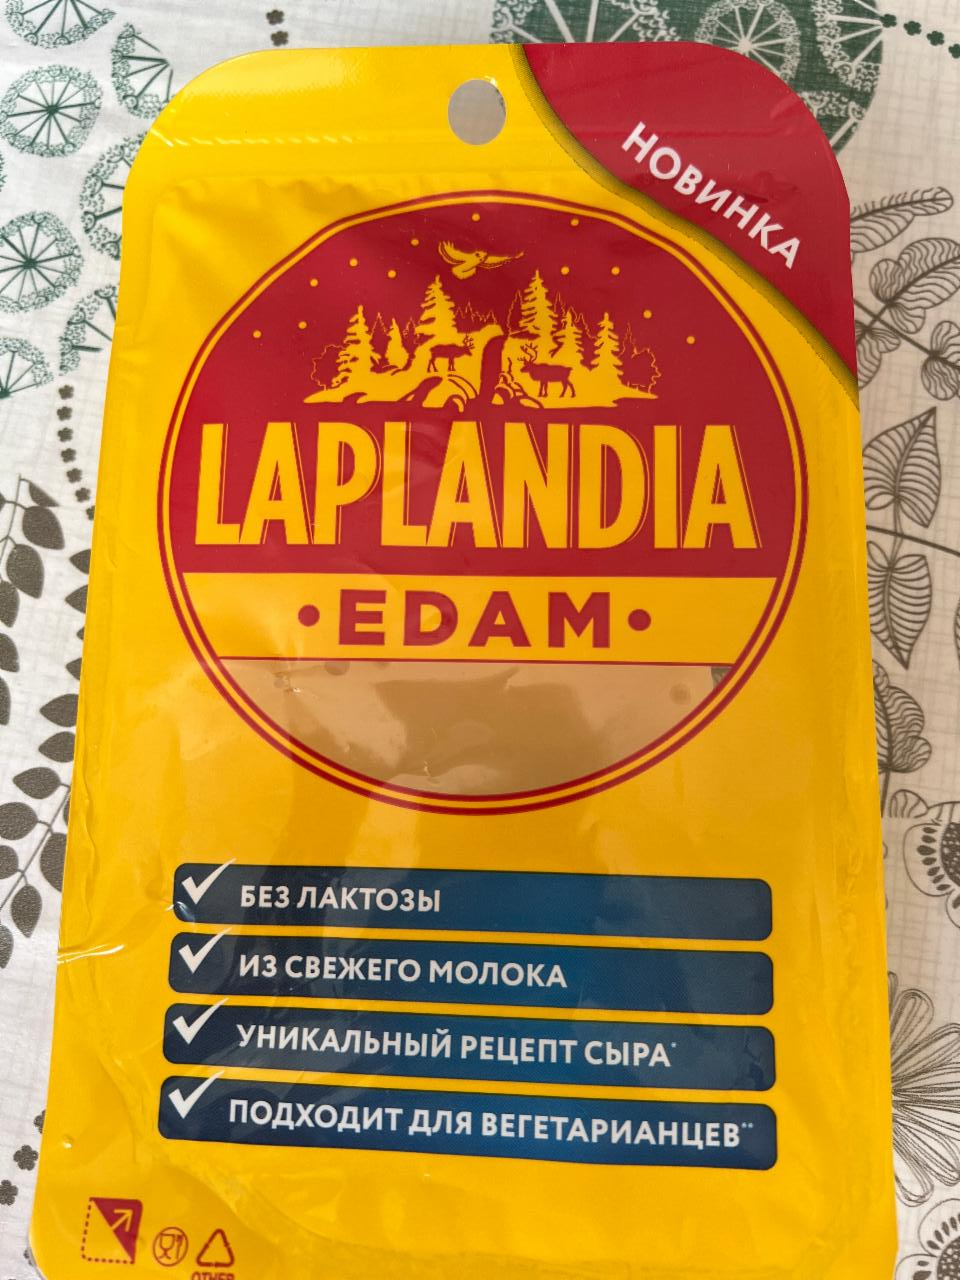 Фото - Edam сыр полутвердый Laplandia